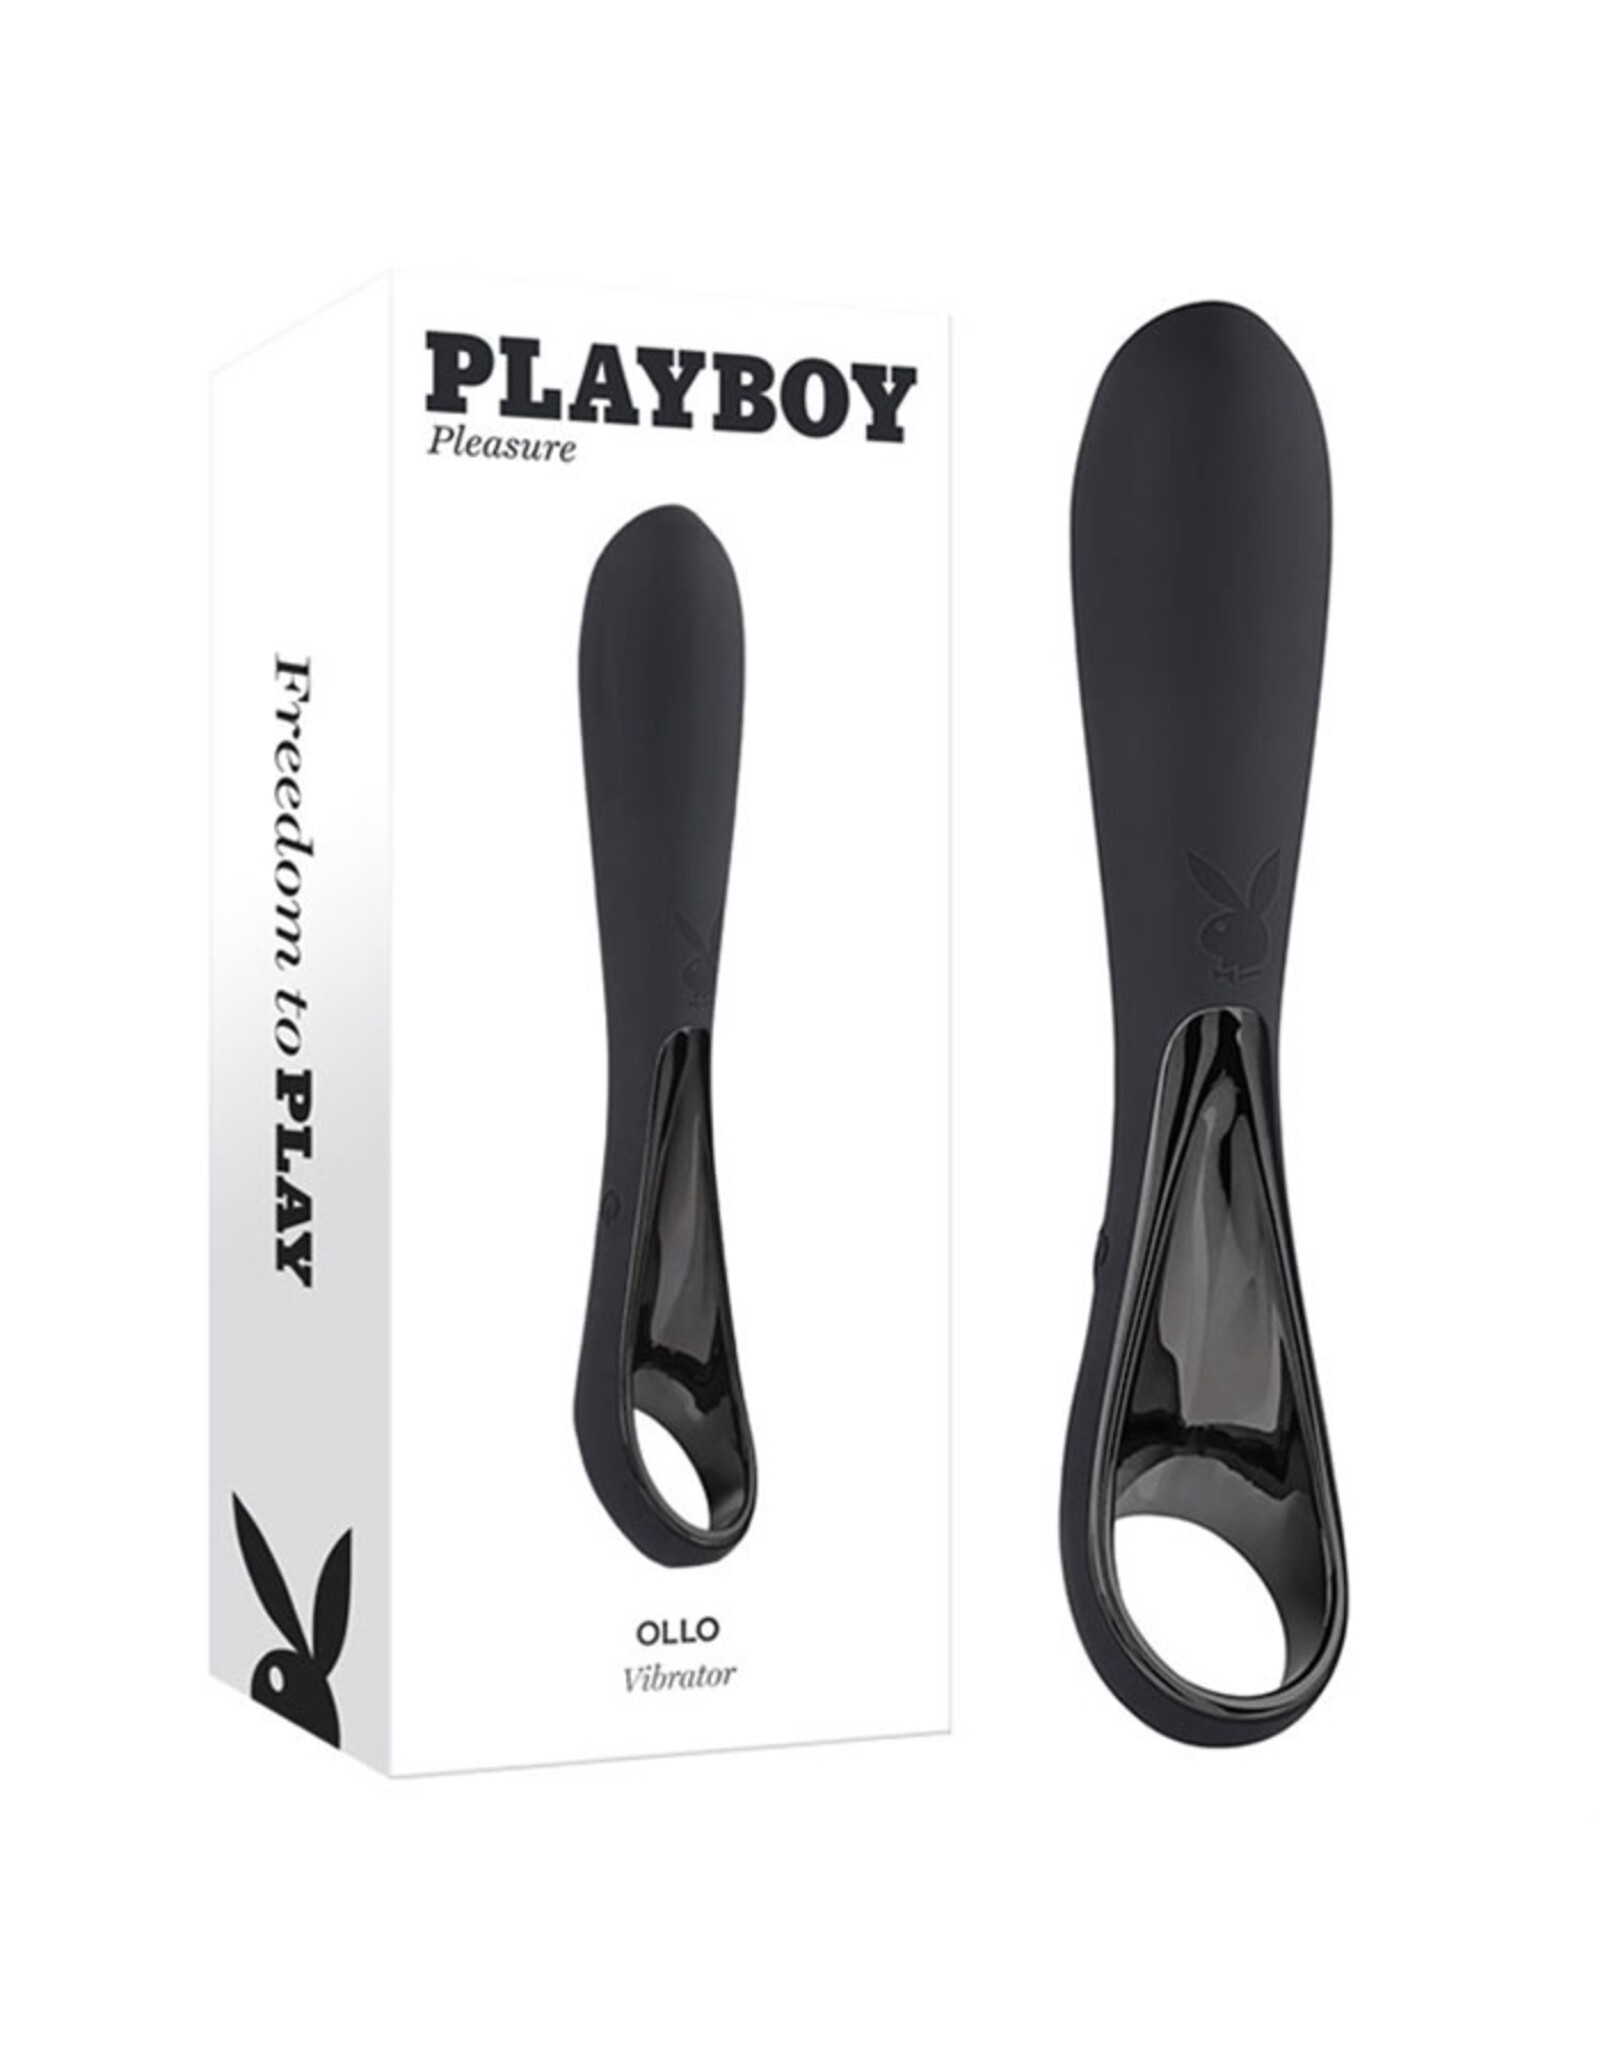 Playboy Playboy - Ollo